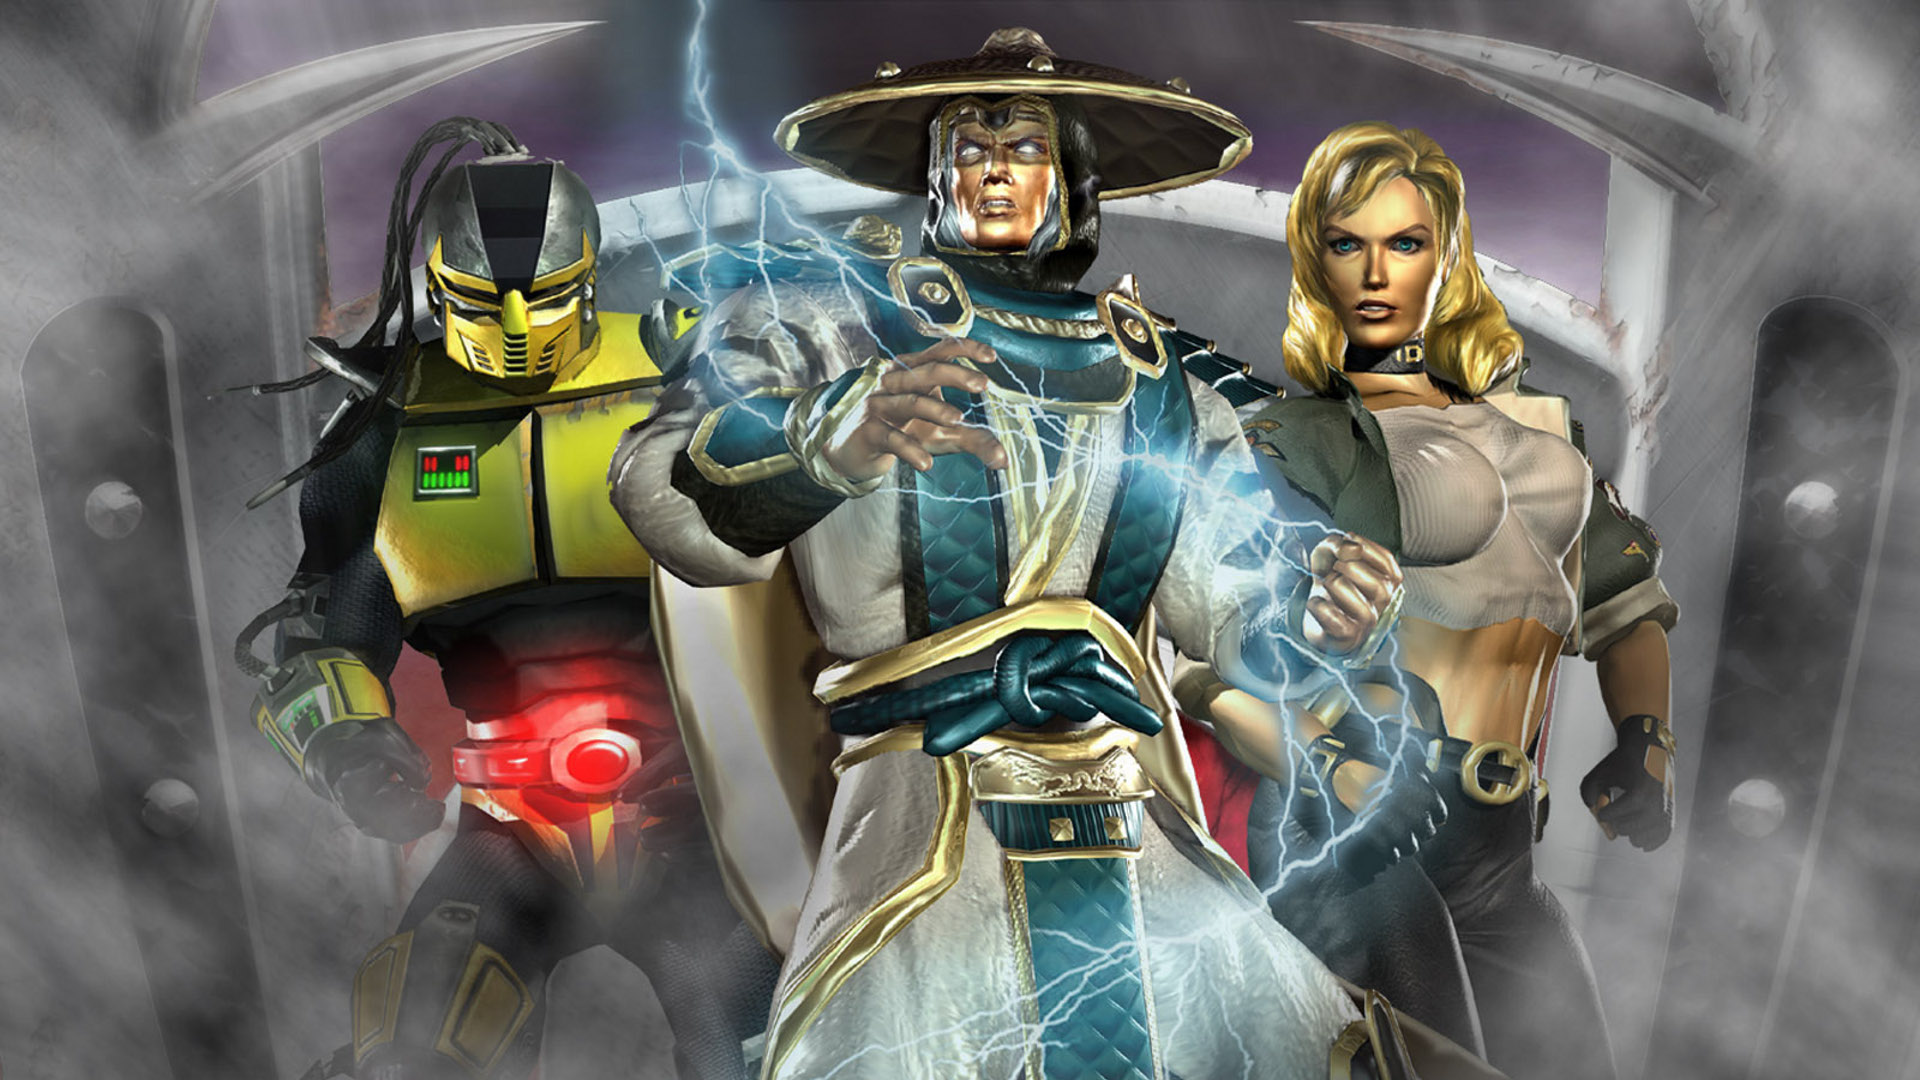 Mortal Kombat: Deadly Alliance Lock Screen Wallpaper